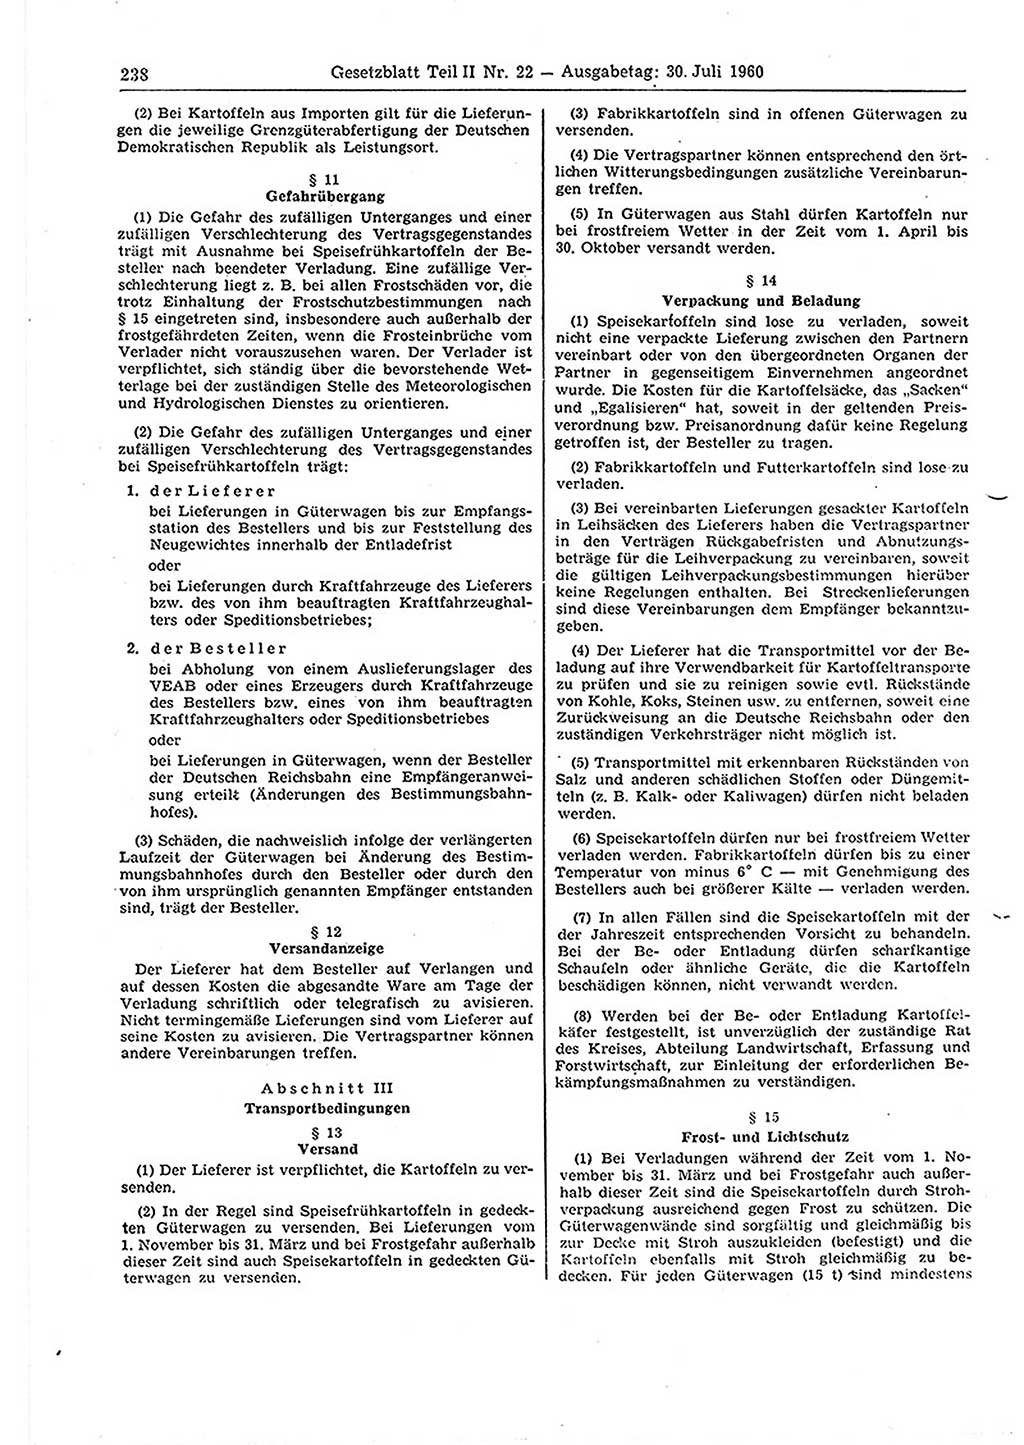 Gesetzblatt (GBl.) der Deutschen Demokratischen Republik (DDR) Teil ⅠⅠ 1960, Seite 238 (GBl. DDR ⅠⅠ 1960, S. 238)